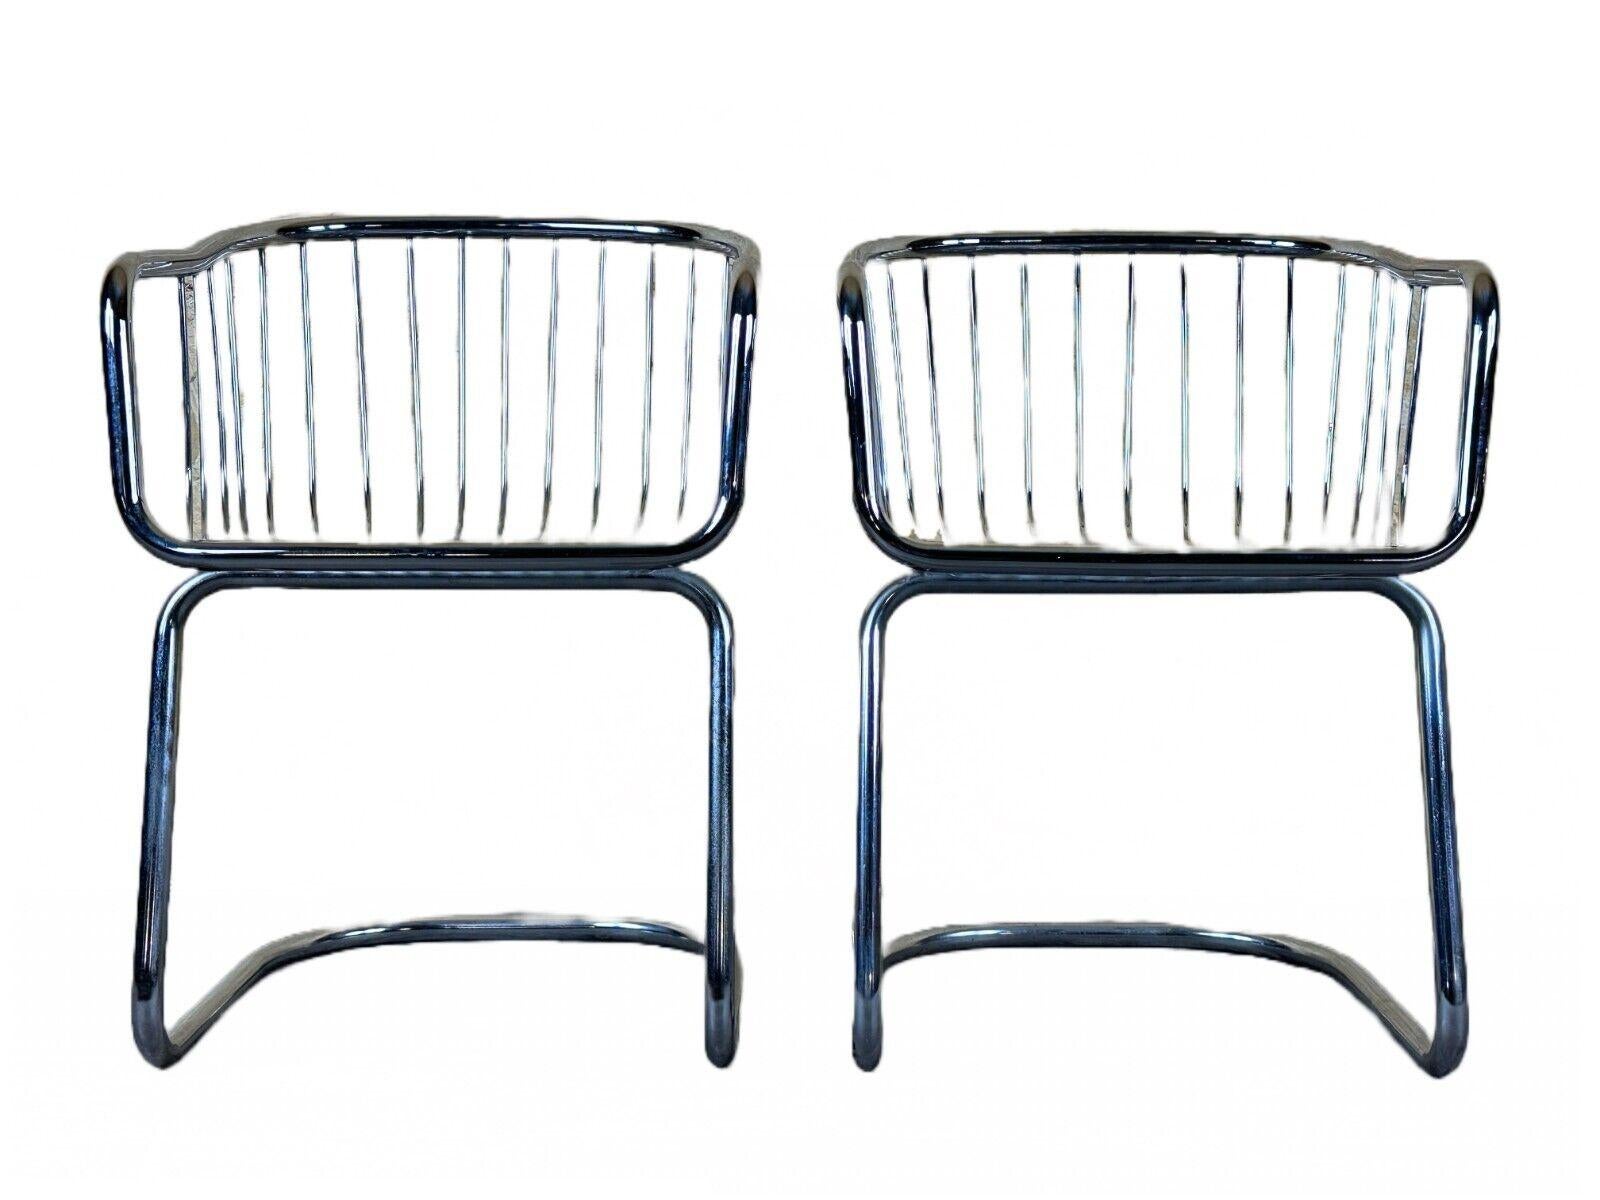 2x 60s 70s wire chair armchair dining chair metal chrome plated design

Objet : 2 chaises en fil de fer

Fabricant :

Condit : bon - vintage

Âge : environ 1960-1970

Dimensions :

Largeur = 53 cm
Profondeur = 53 cm
Hauteur = 72cm
Hauteur d'assise =